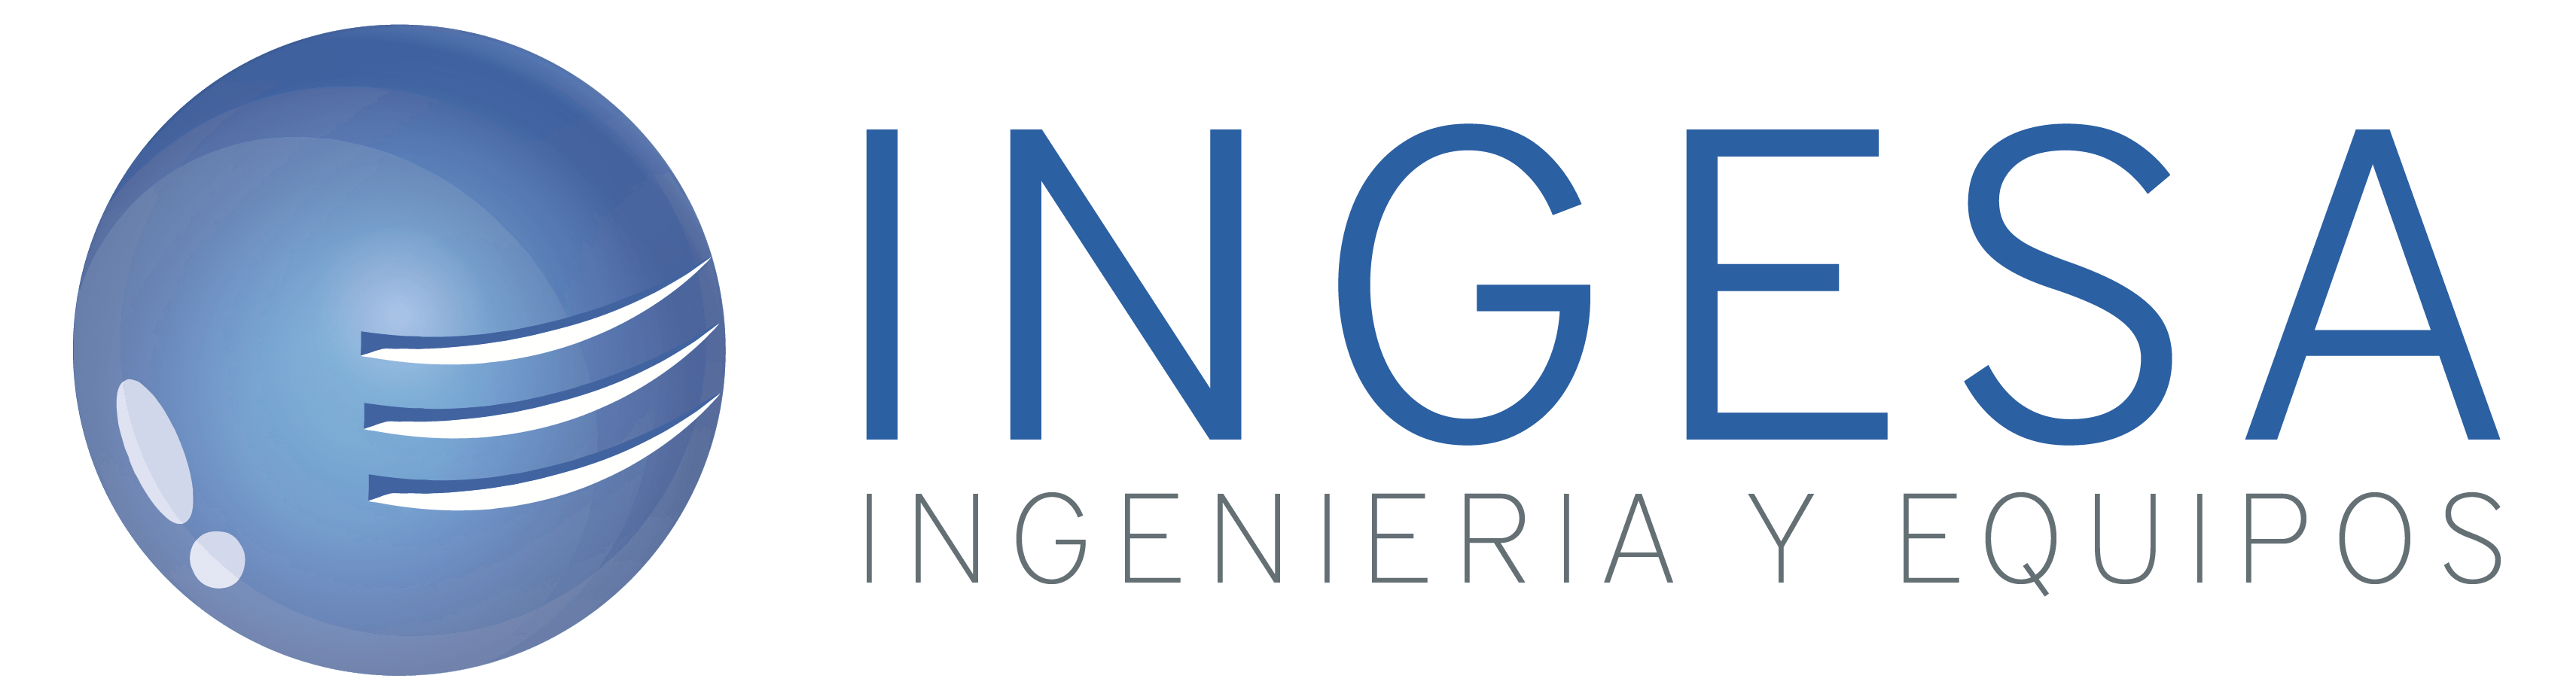 Logo de INGESA, Ingeniería y Equipos SL